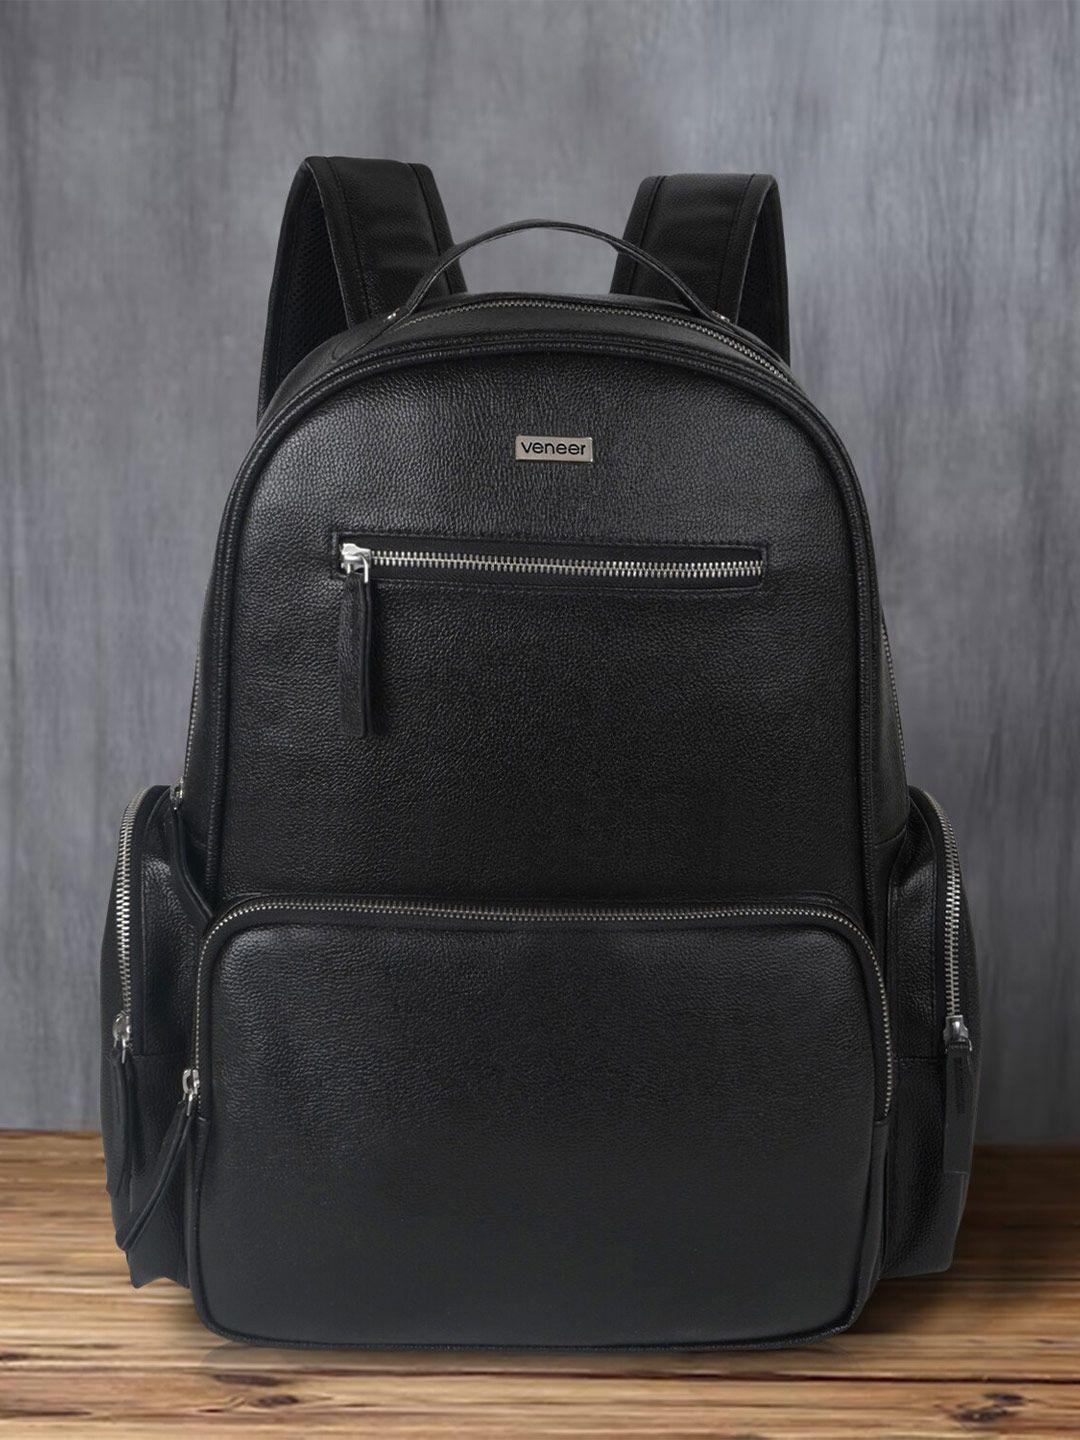 veneer unisex backpack